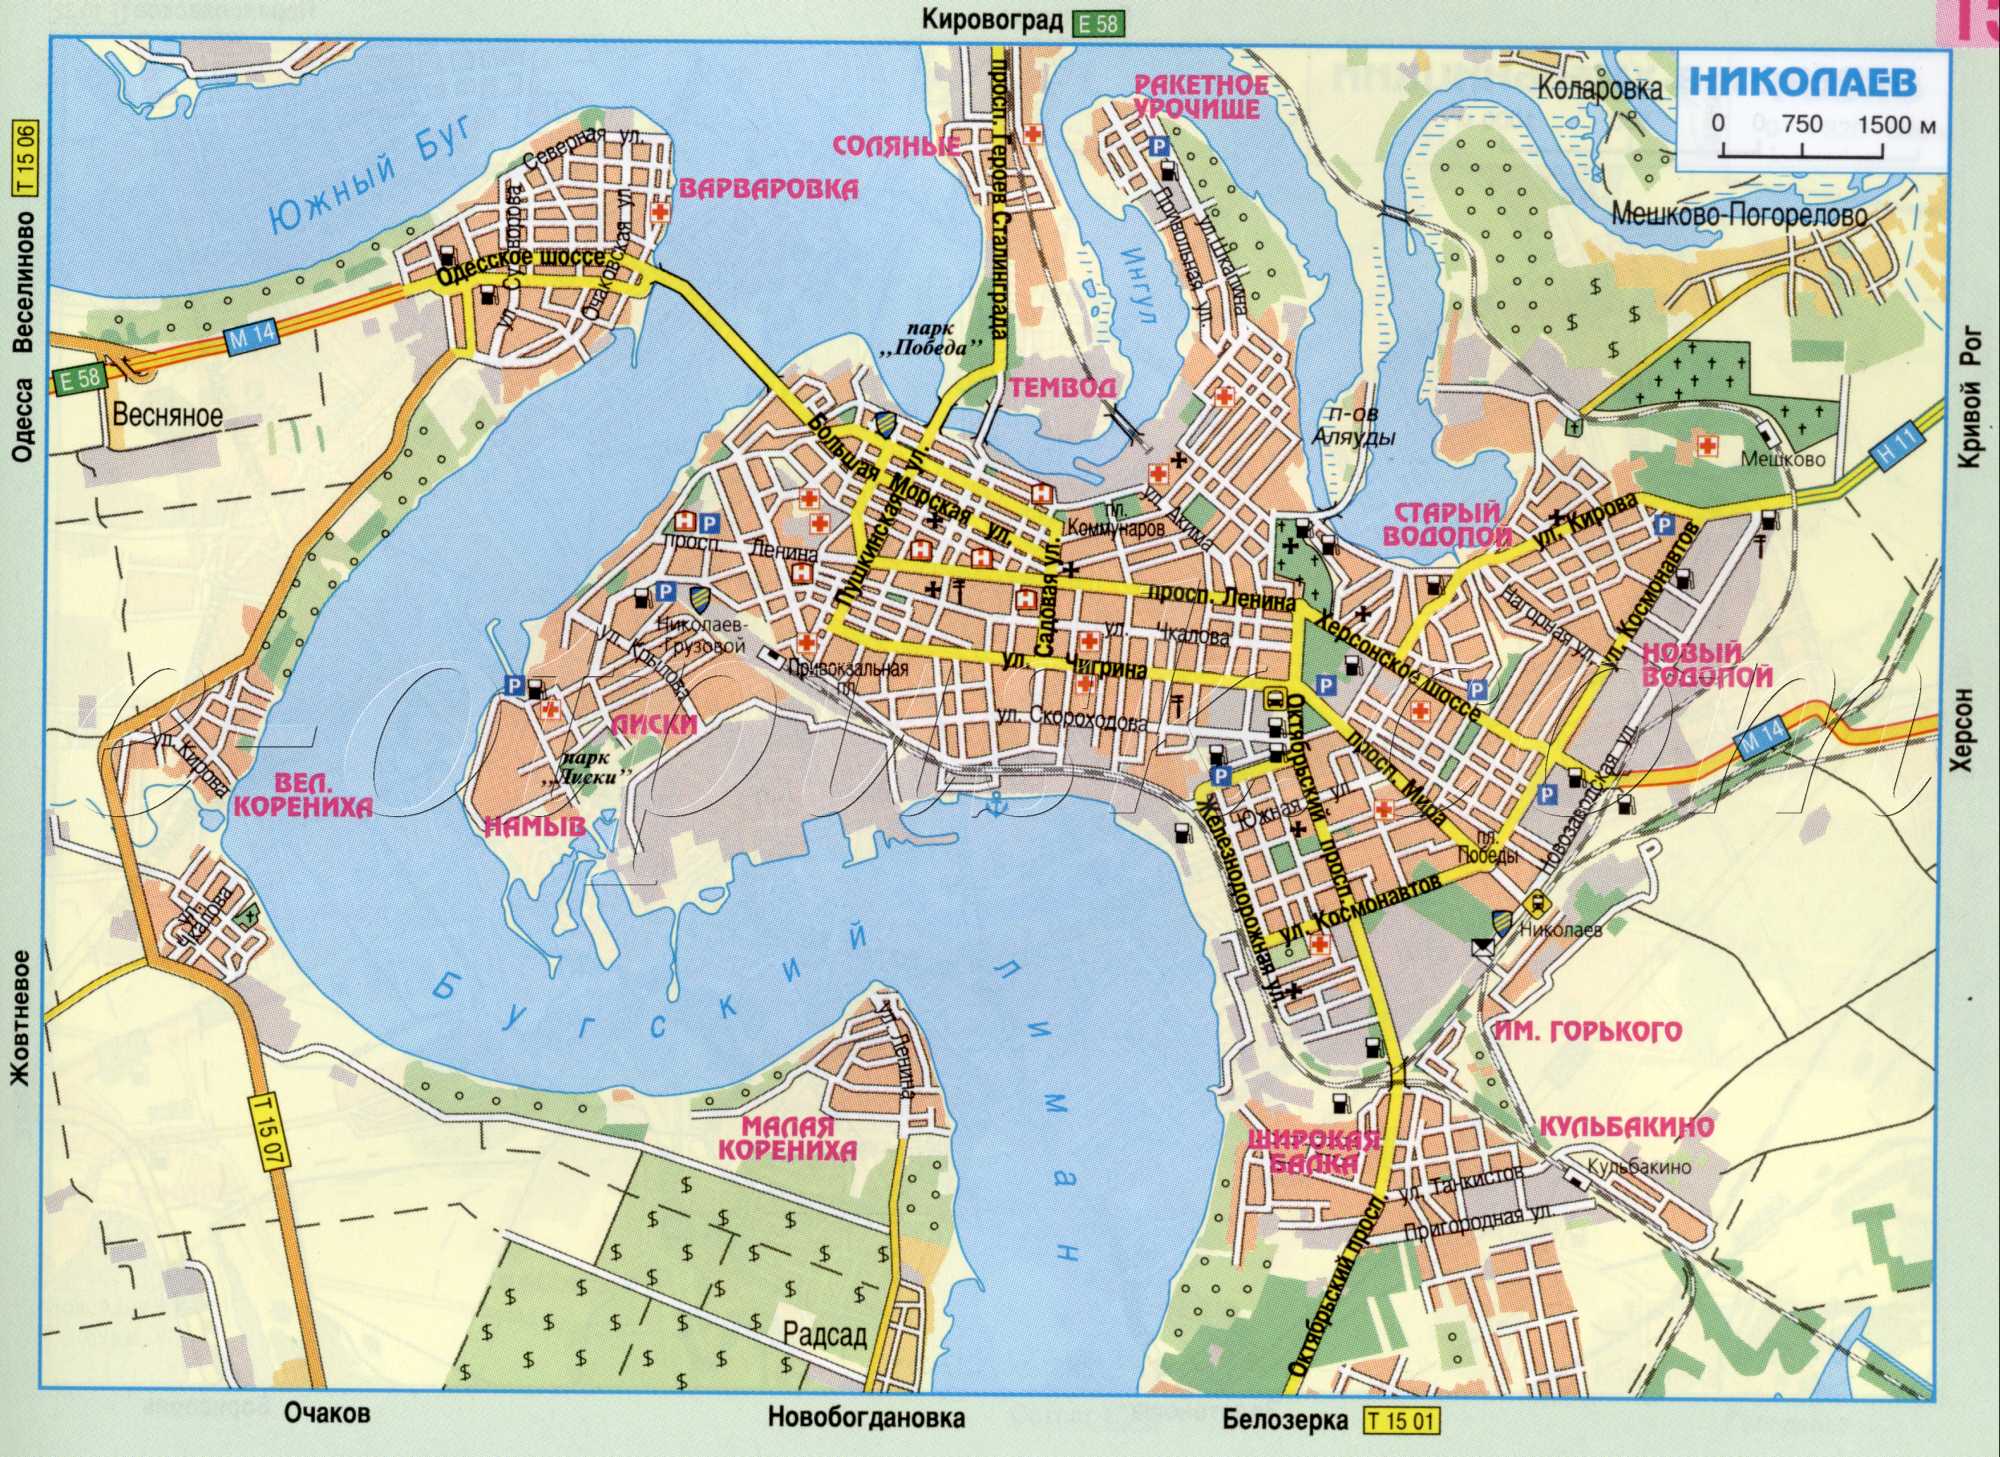 Карта Николаева. Карта автомобильных дорог города Николаева. 